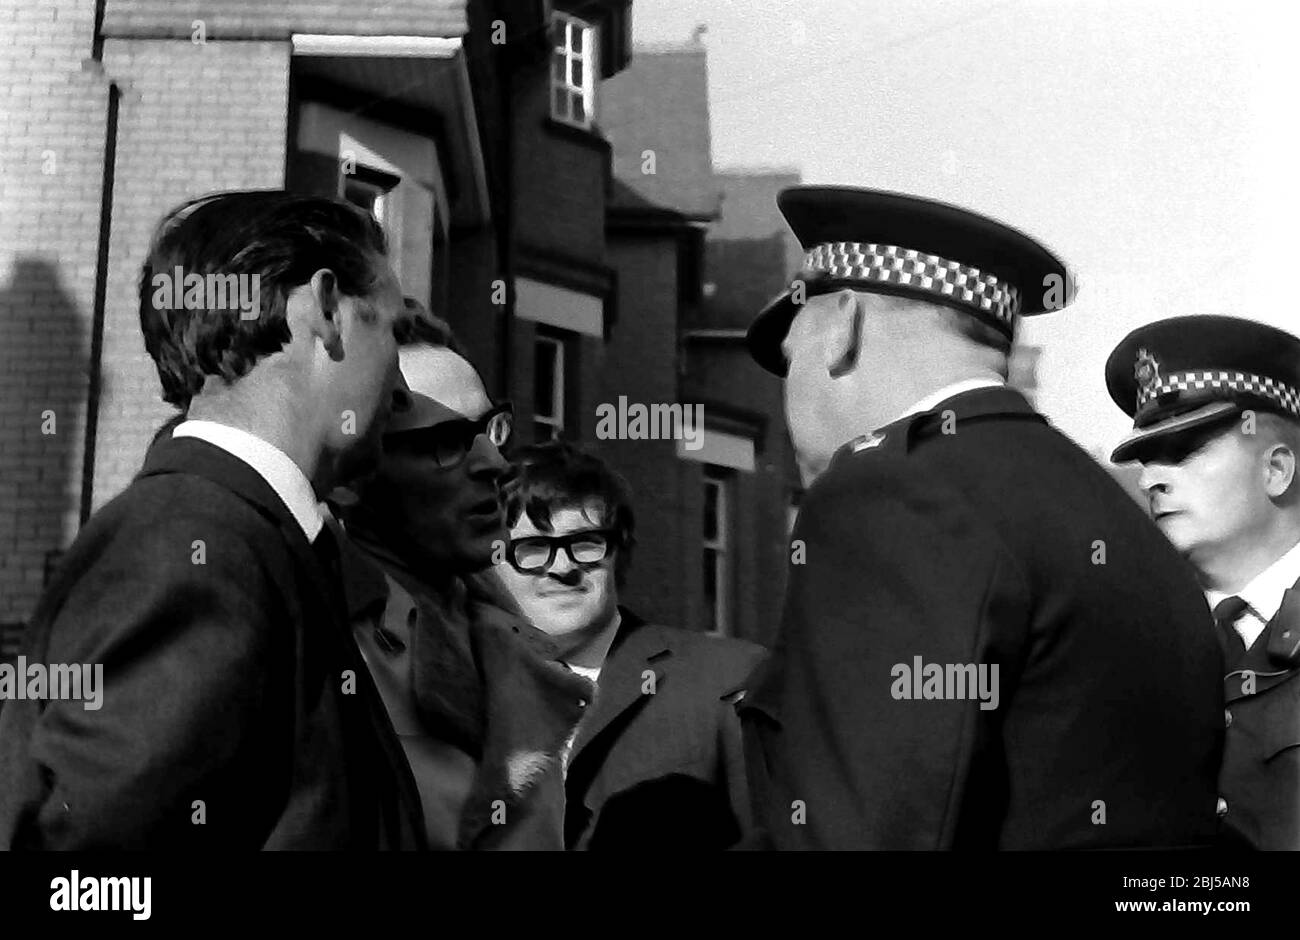 Des policiers discutent avec le public lors d'une manifestation contre le racisme à Leicester, en Angleterre, au Royaume-Uni, dans les îles britanniques, en 1972. Banque D'Images